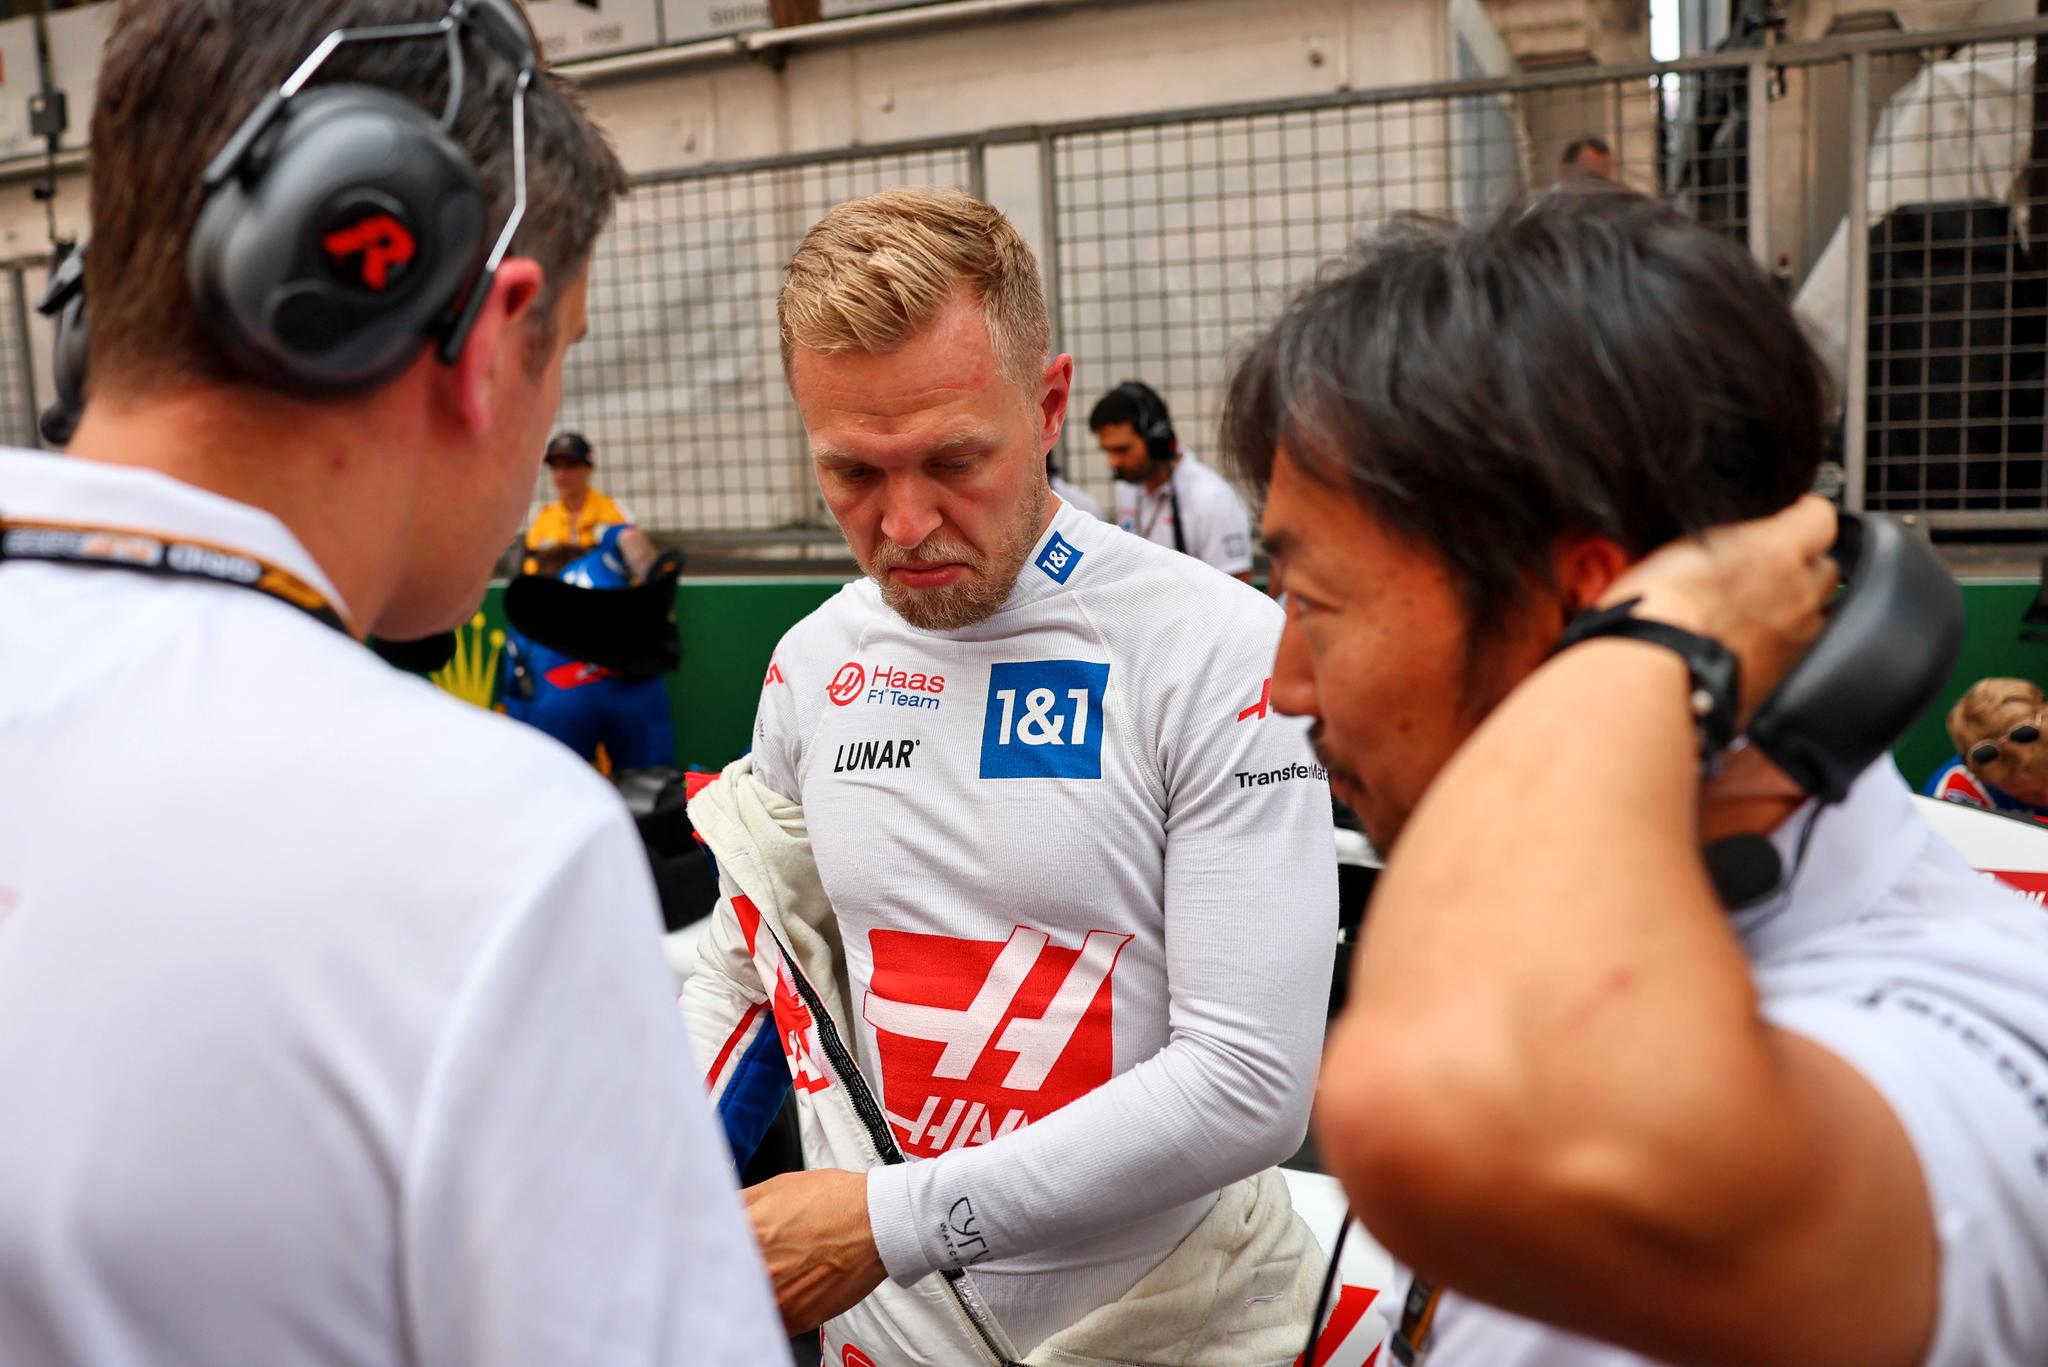 DÅRLIG KEVINST: Kevin Magnussen er en av flere førere med Ferrari-motor som har vært uheldig med bilen denne sesongen. Dansken måtte bryte løpet i Monaco.